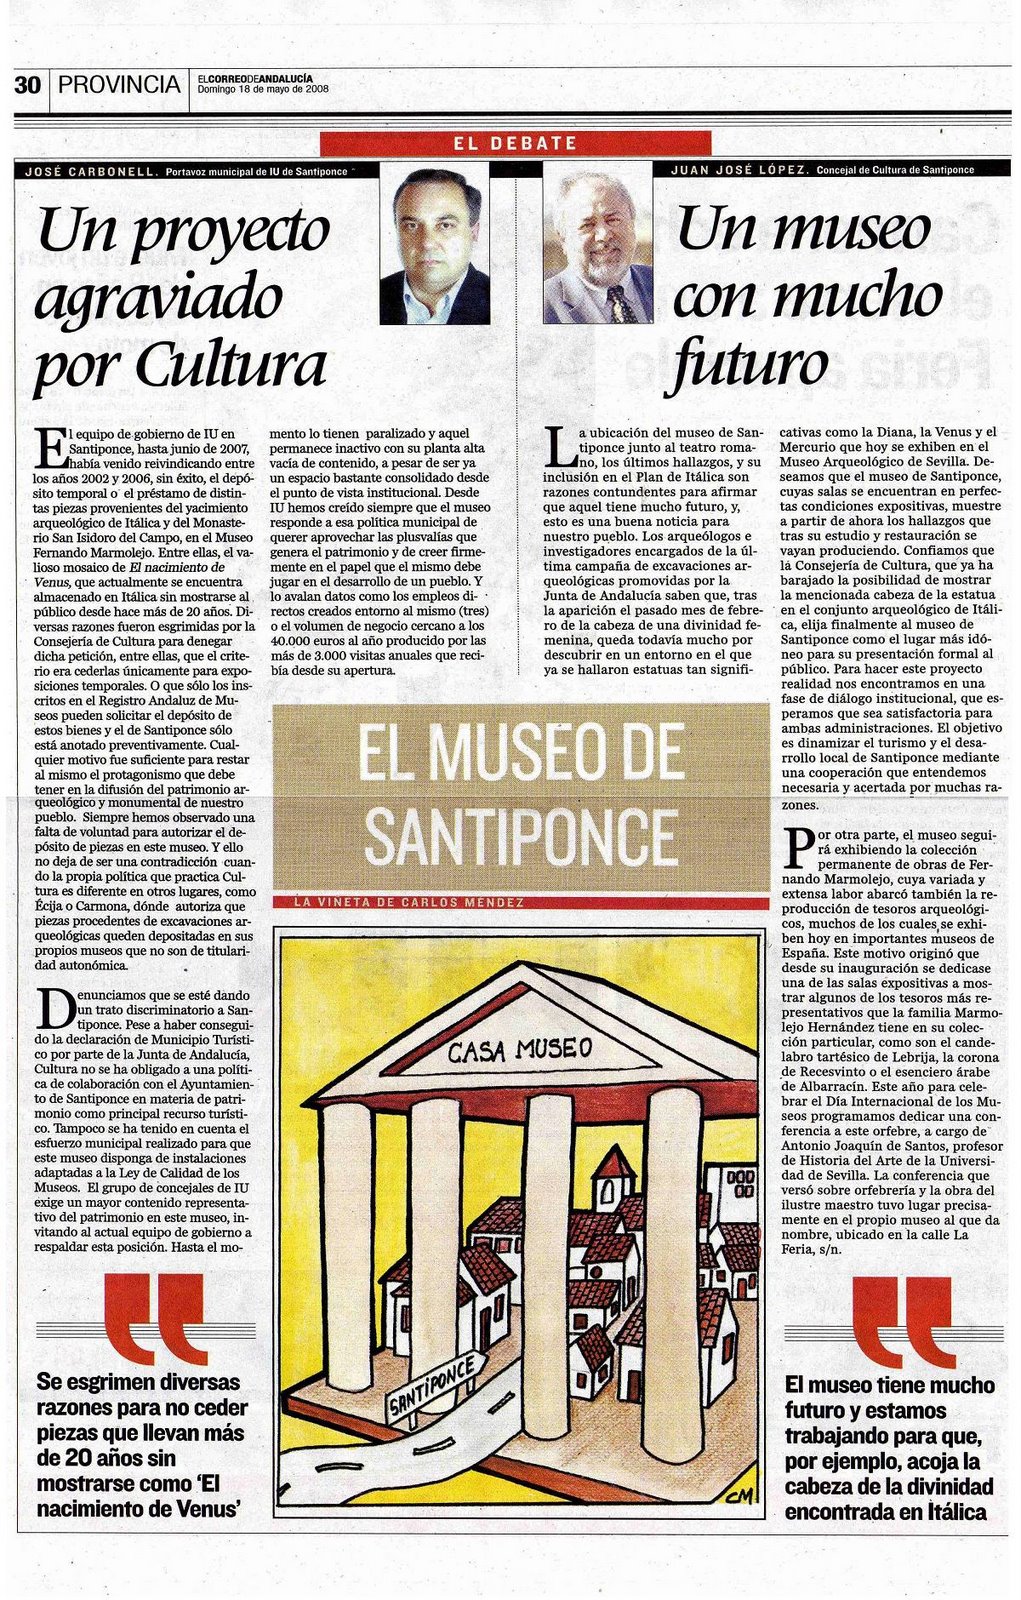 [2008+05+18+CORREO+ANDALUCÃ A+EL+MUSEO+DE+SANTIPONCE.jpg]